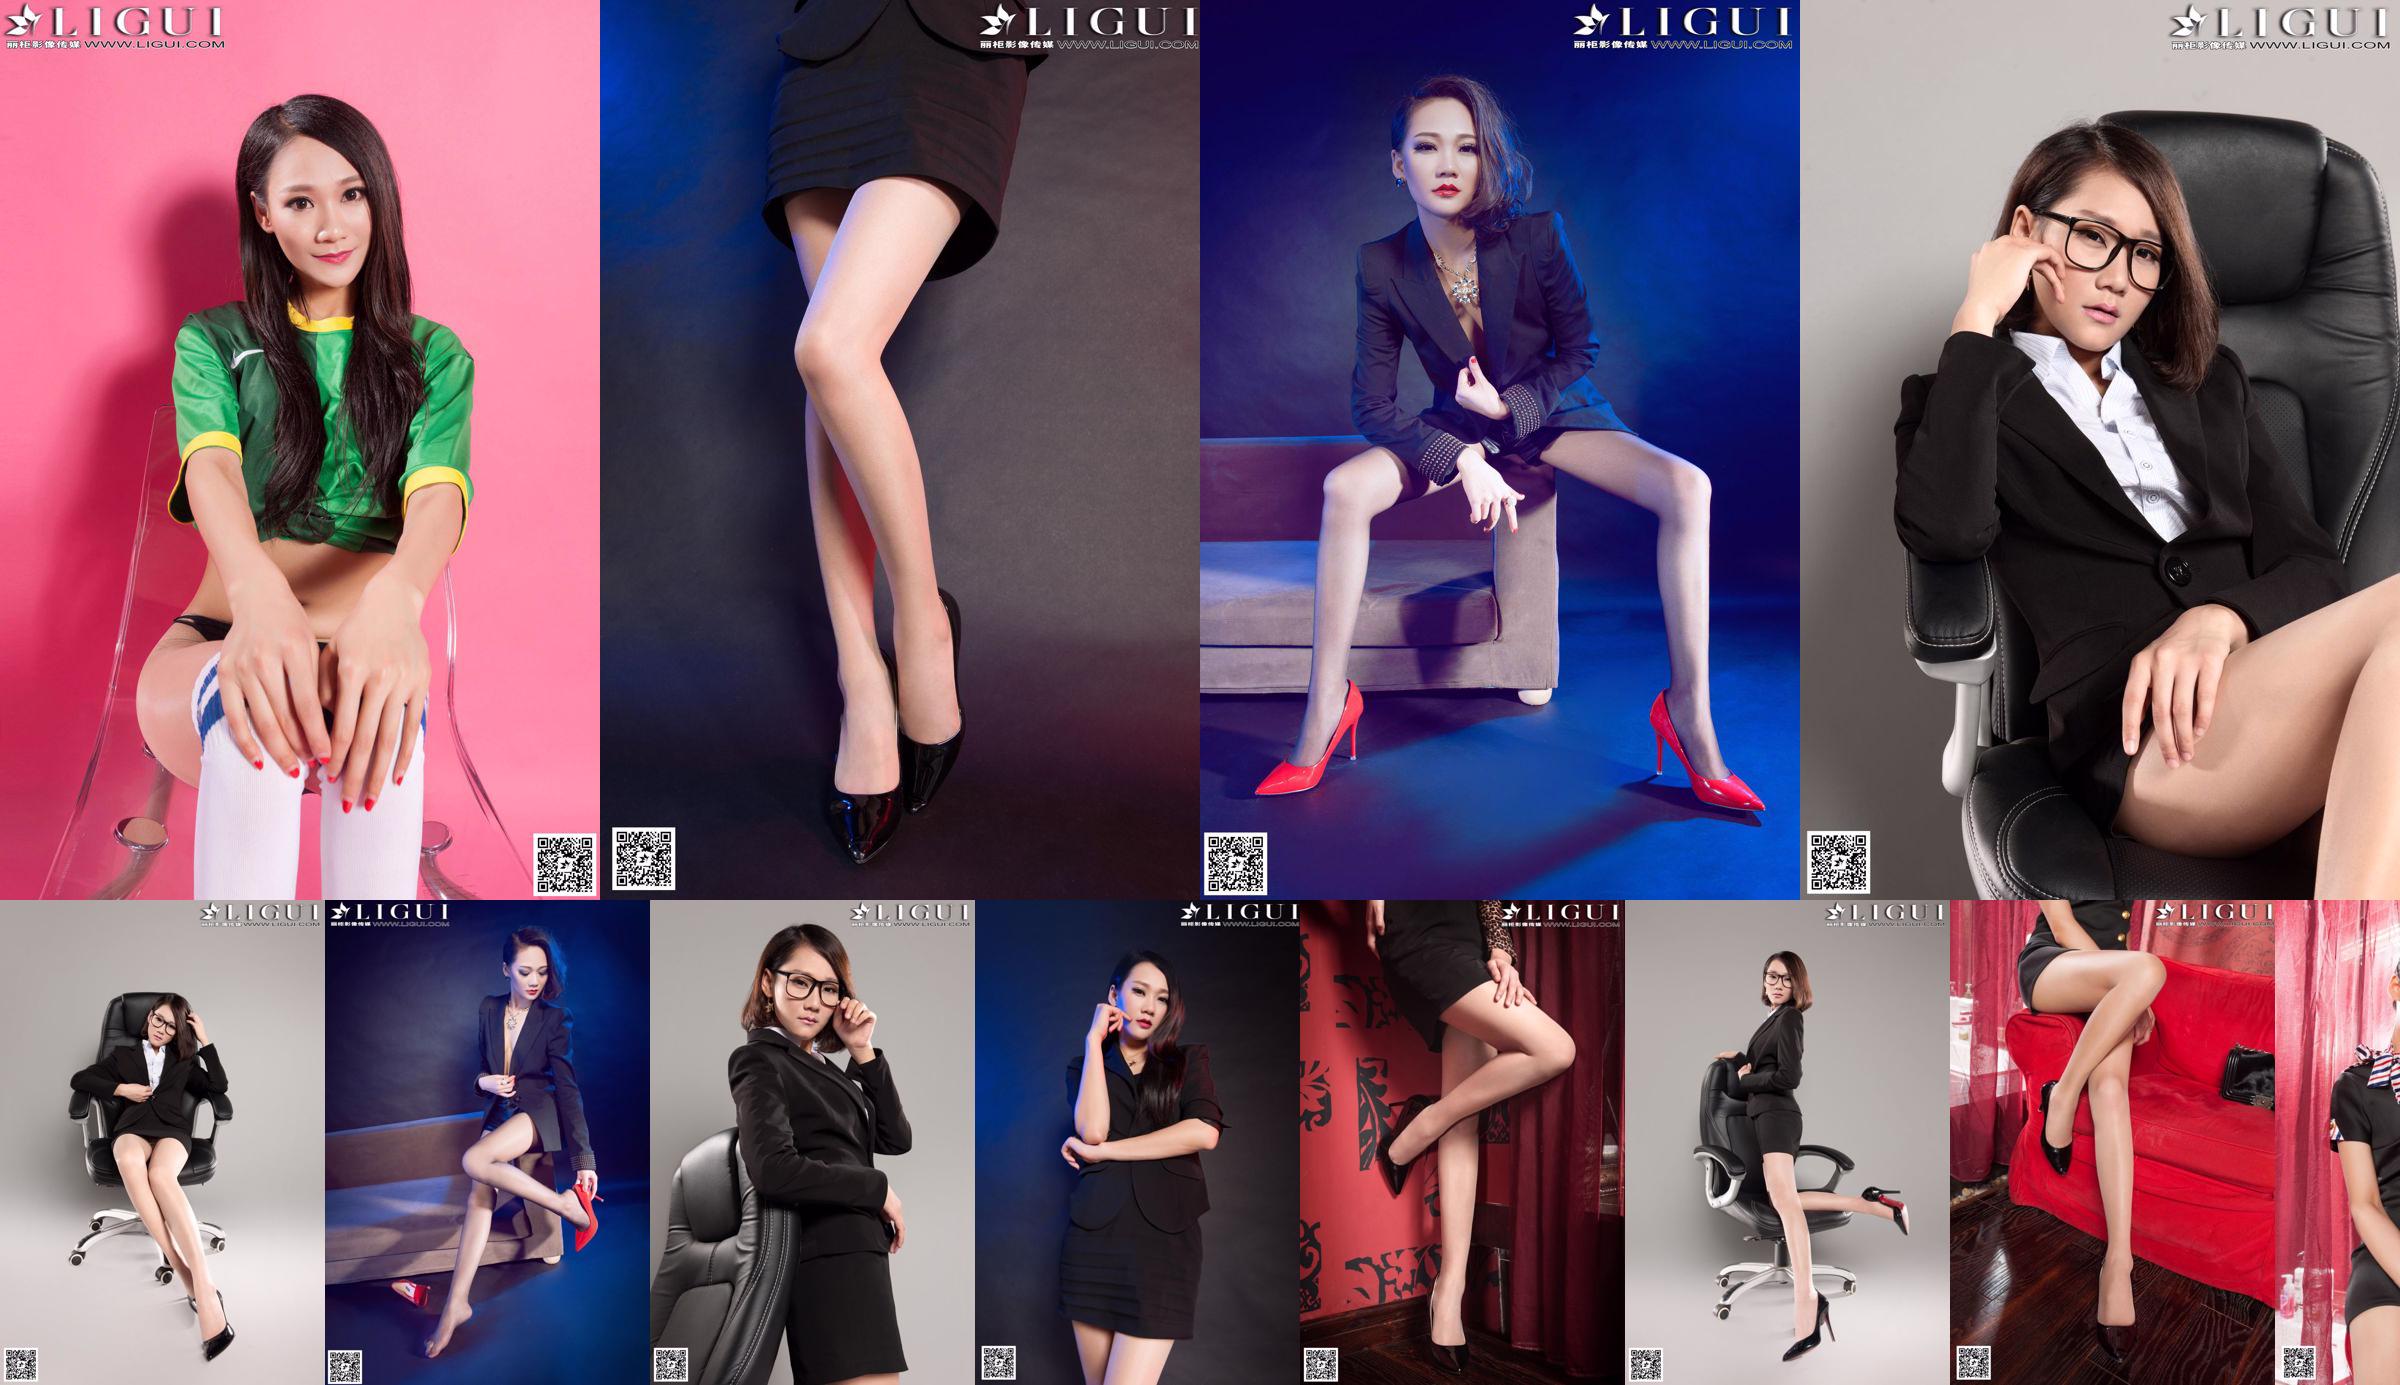 [丽 柜 LiGui] Tác phẩm hoàn chỉnh về những bức ảnh chân đẹp và bàn chân ngọc bích của người mẫu Mandy "Vẻ đẹp nơi làm việc có đôi chân mượt mà" No.eb0dff Trang 1